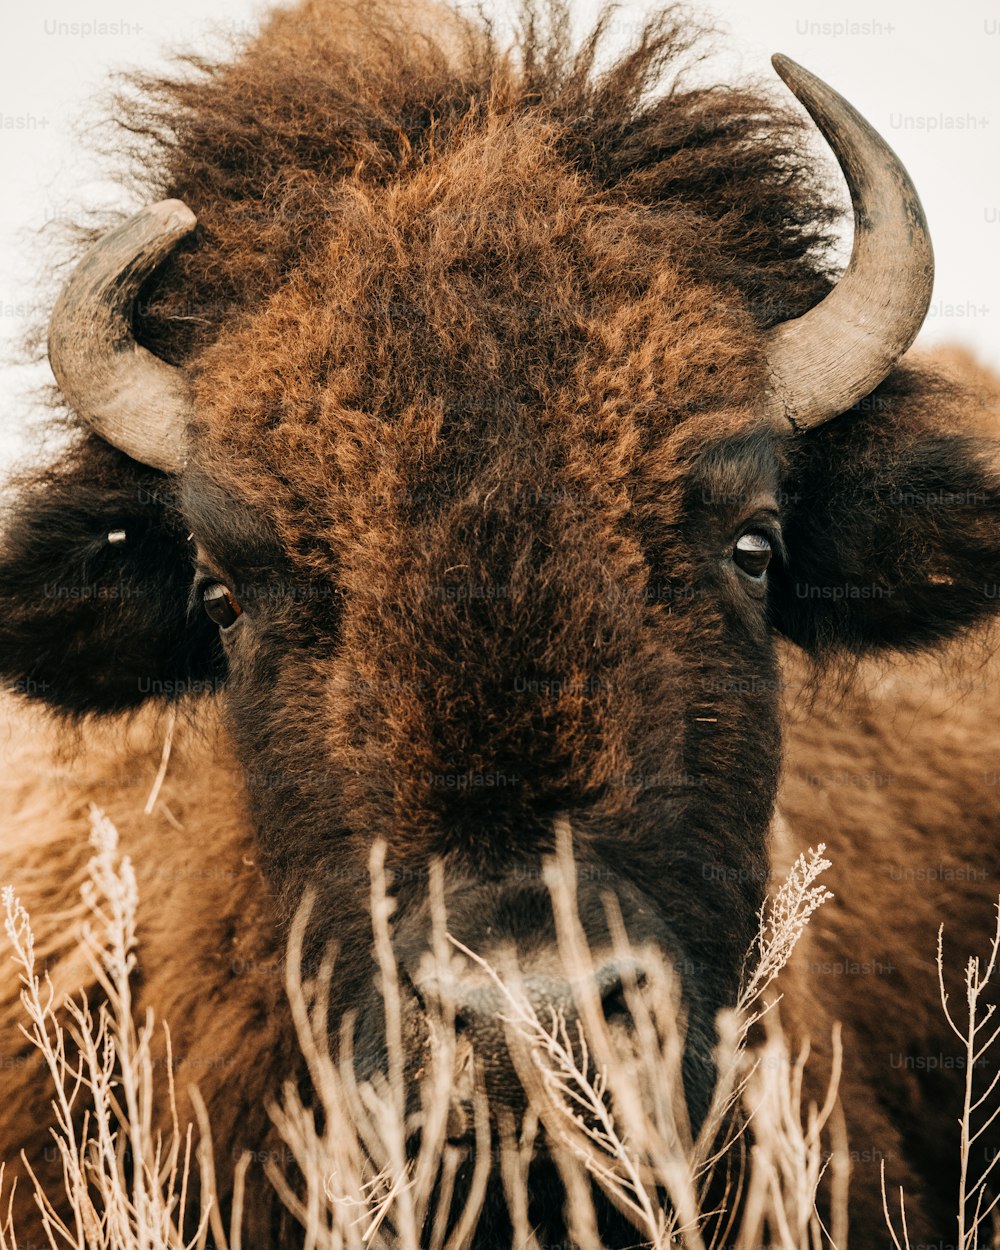 Un primer plano de un bisonte con cuernos largos